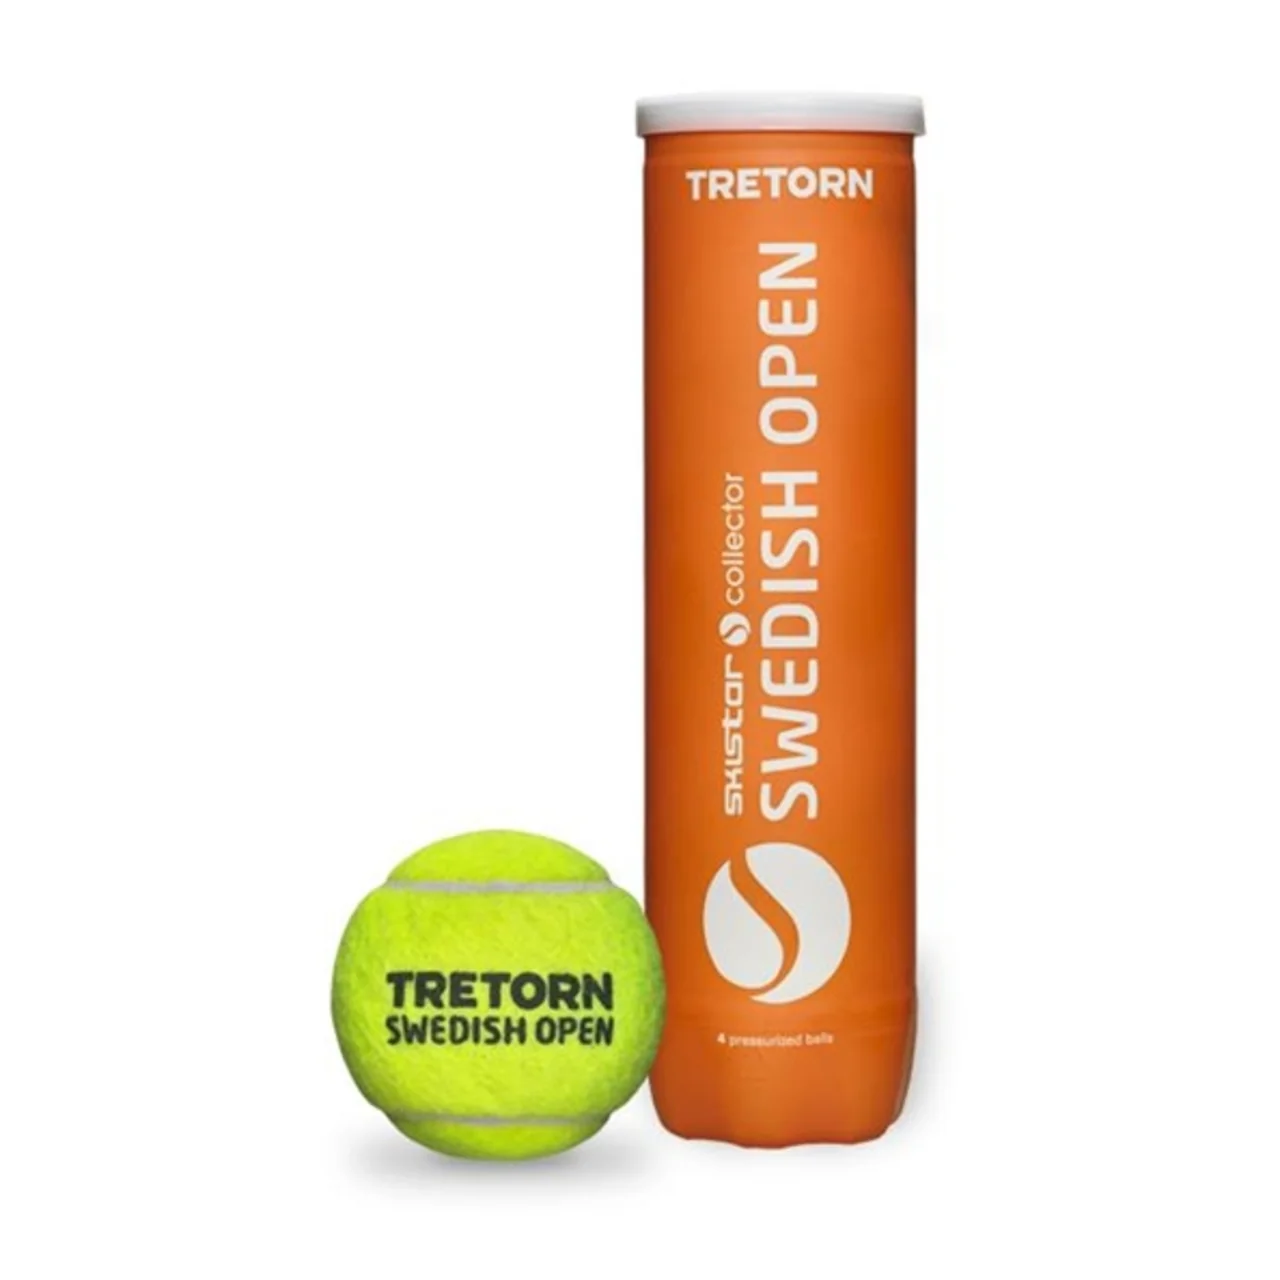 Tretorn Swedish Open 1 tuubi